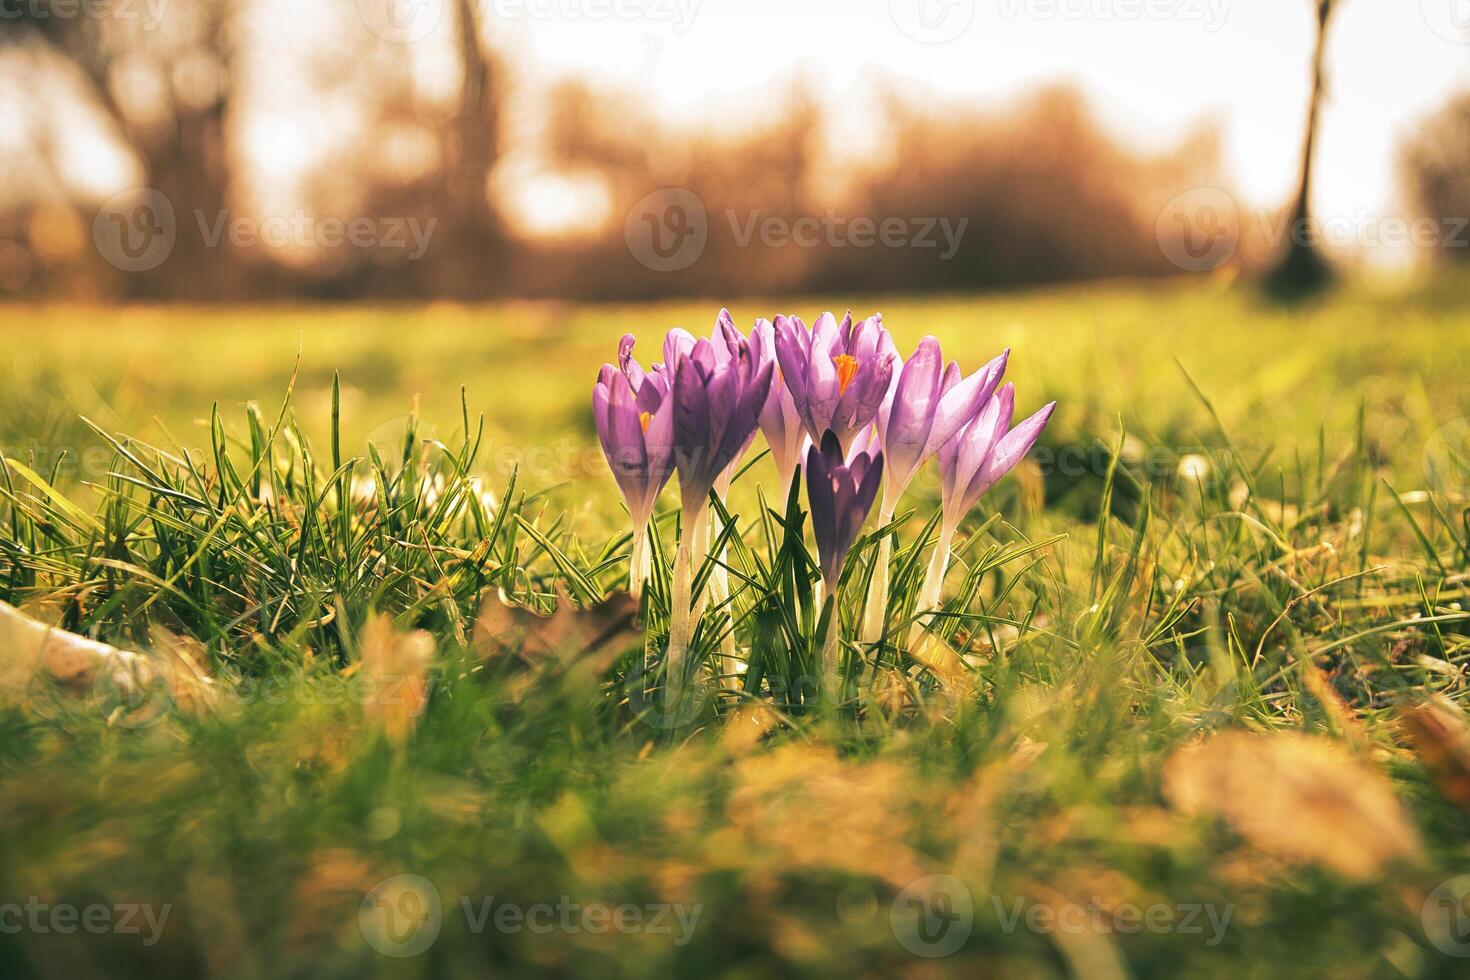 krokussen in een weide in zacht warm licht. voorjaar bloemen dat heraut de lente. bloemen foto